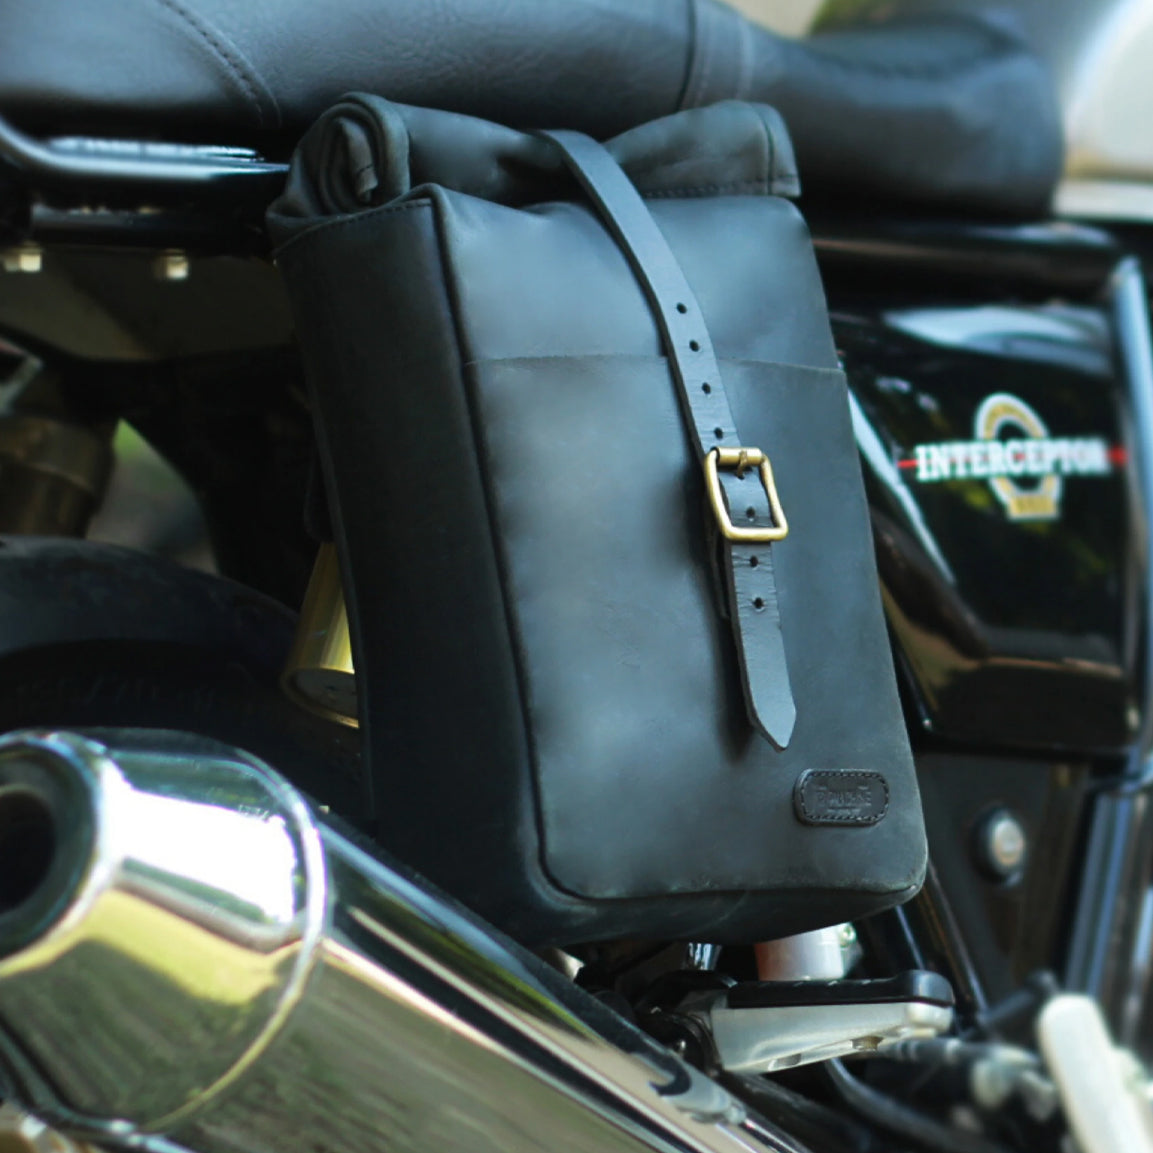 Tripmachine Mini Pannier Classic - black. Klassische Motorrad-Gepäcktasche aus schwarzem Leder im Retro-/Vintage-Stil, perfekt für einen Ein-Tages Ausflug. Einfaches Montagesystem an nahezu jedem Motorrad möglich. 